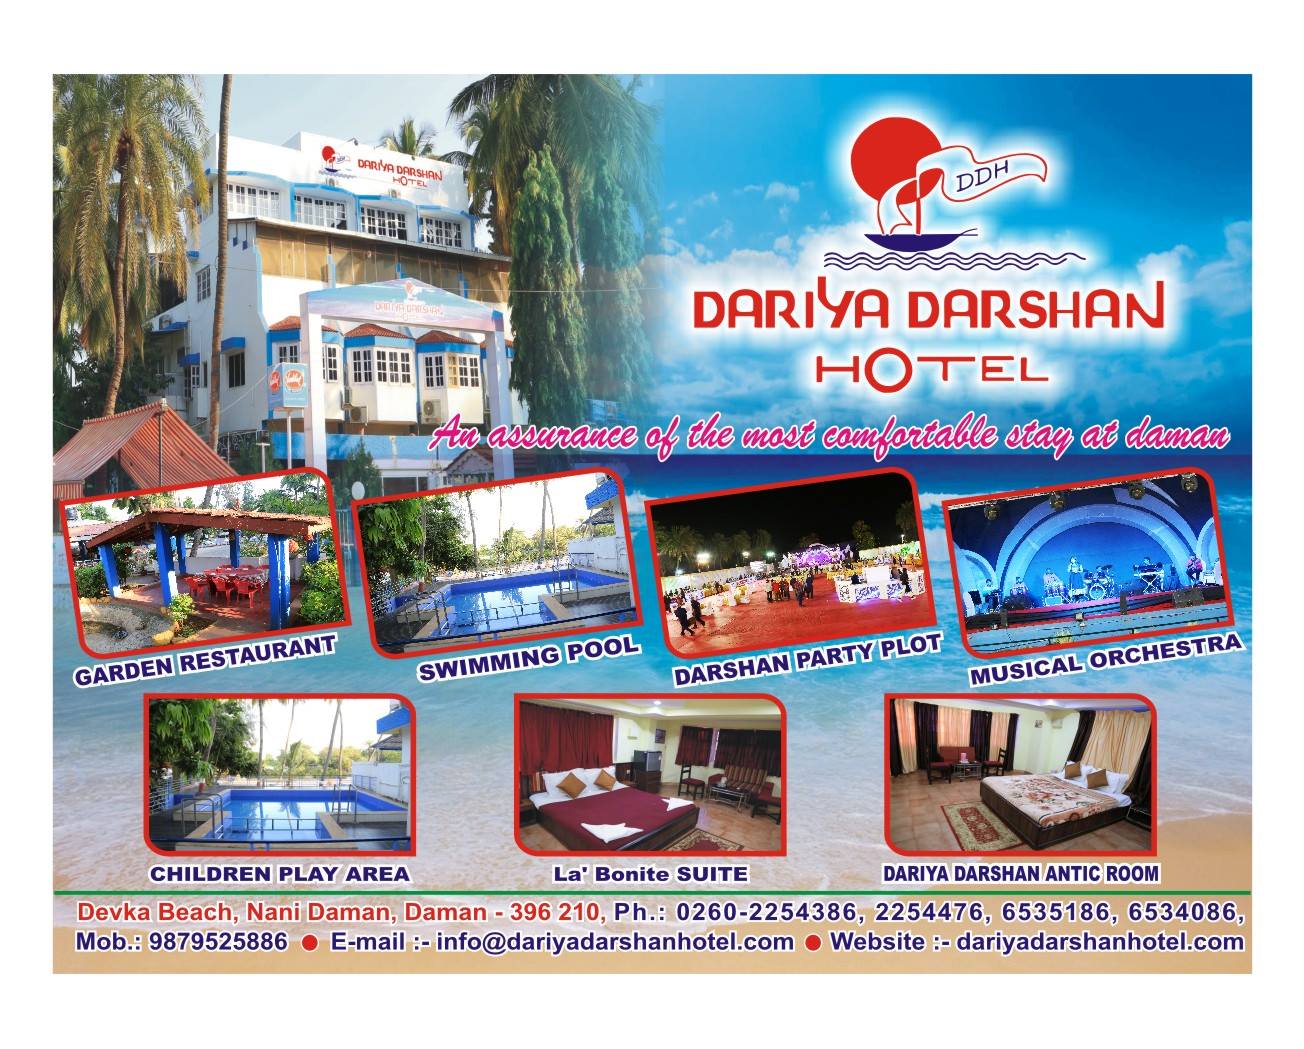 Dariya Darshan Hotel